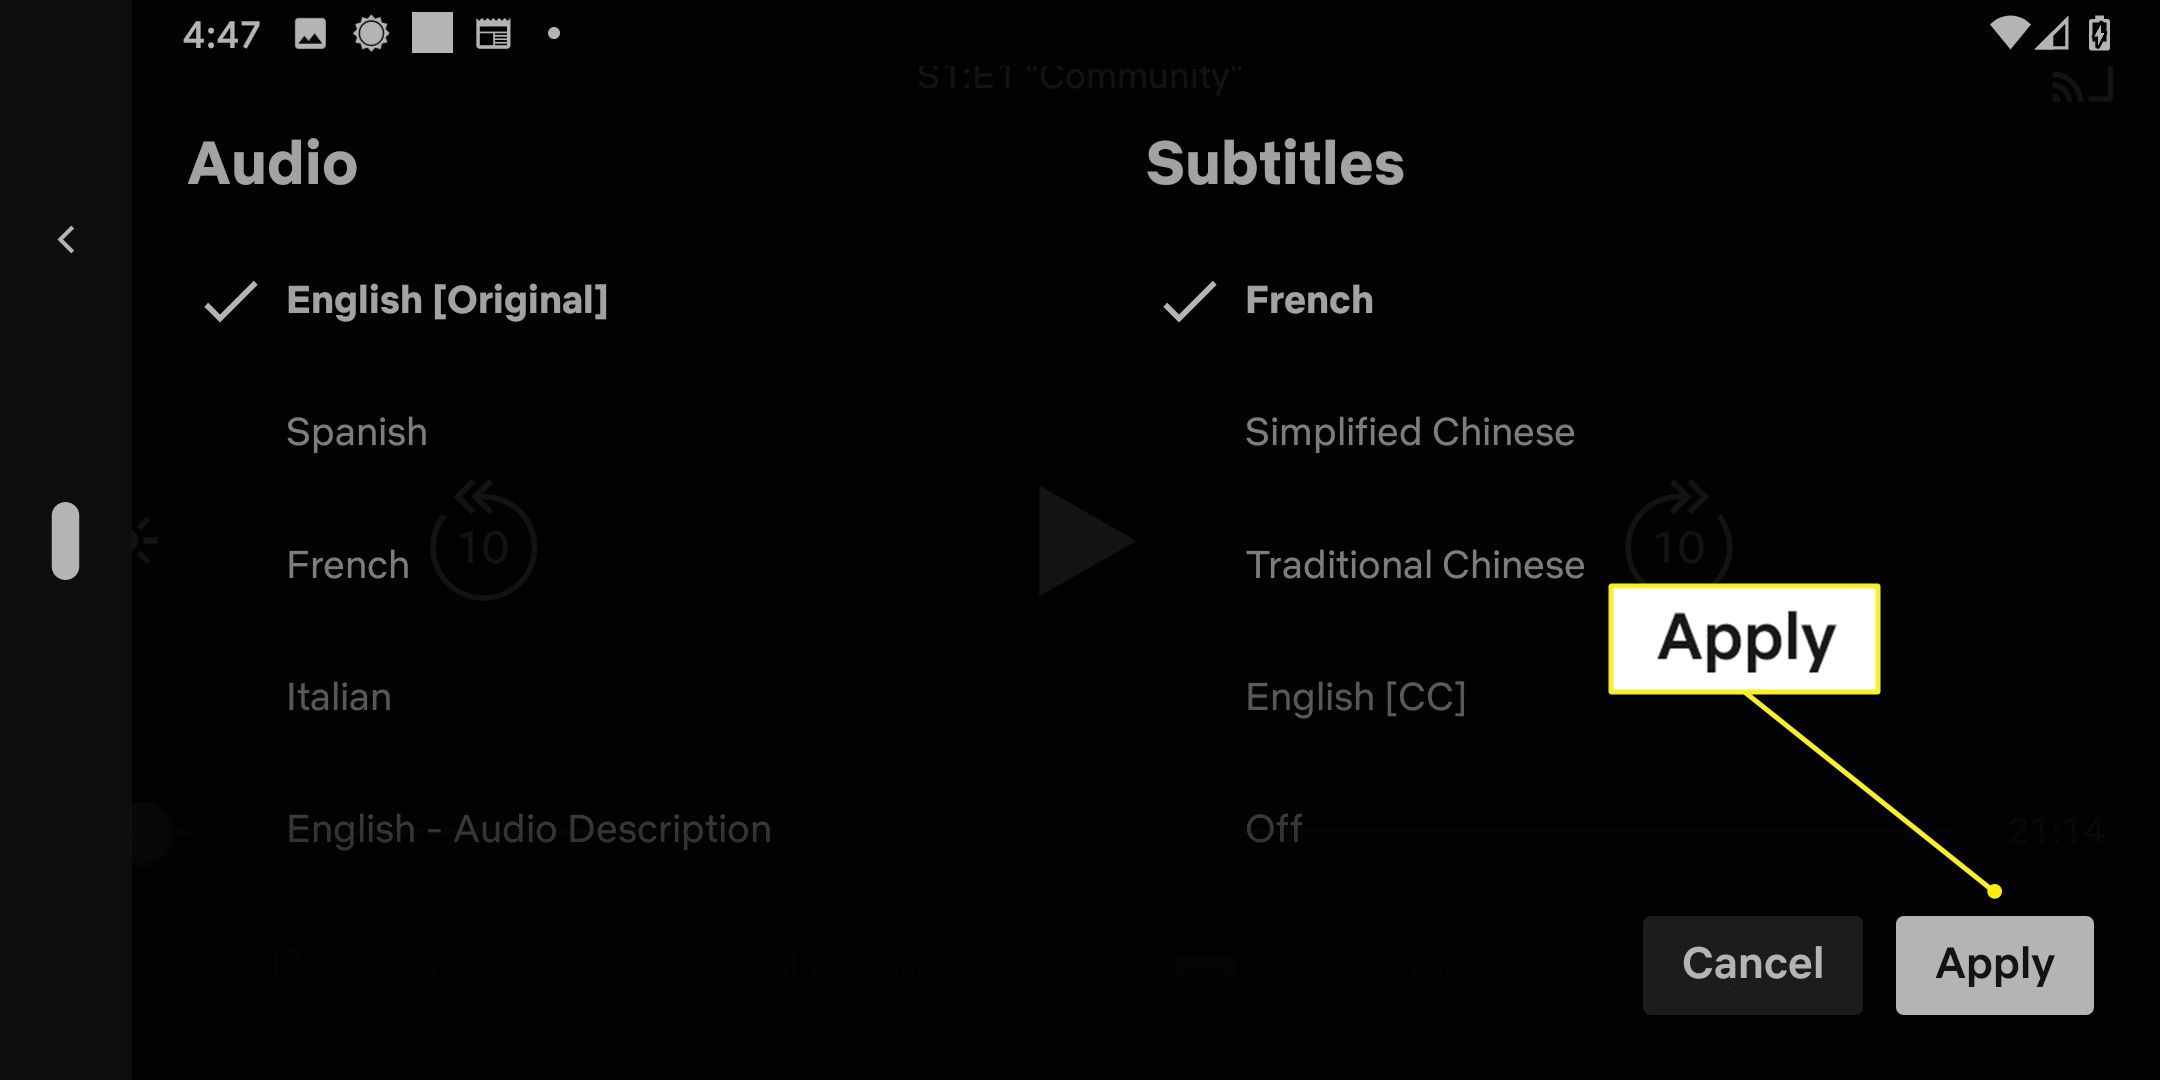 Ondertitelingsopties in de Netflix-app met Toepassen gemarkeerd